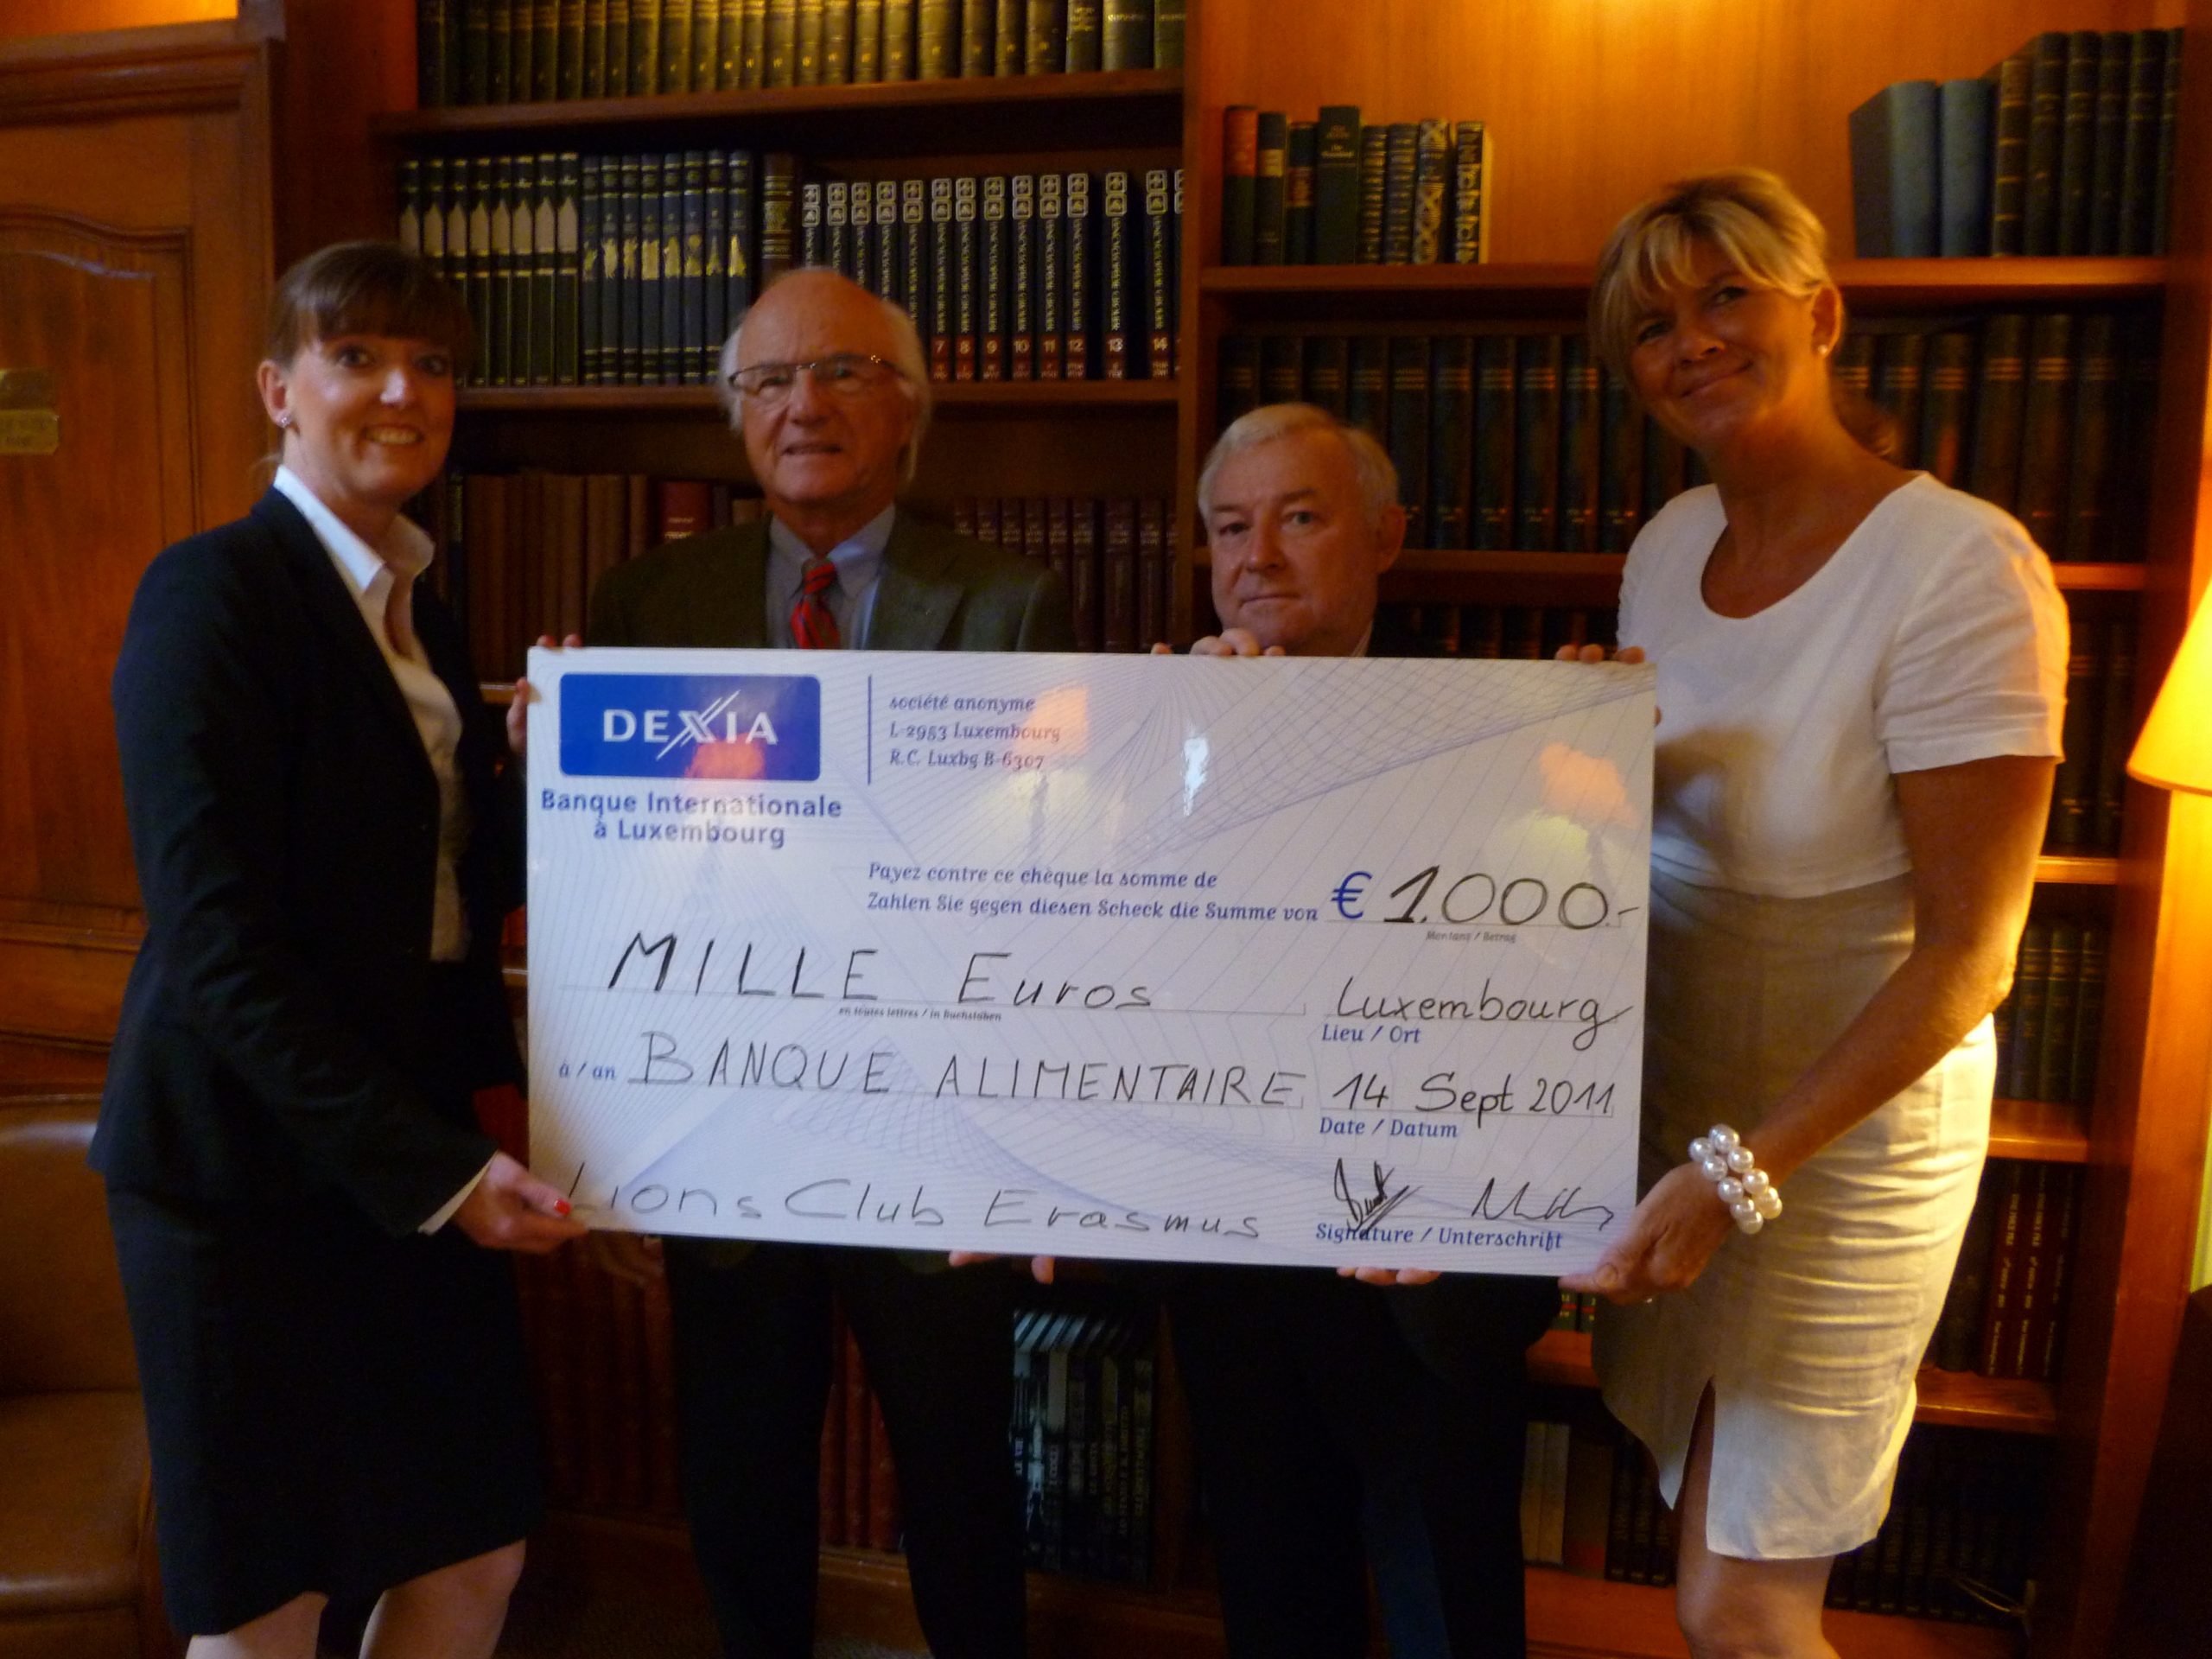 Lions Club Erasmus cheque donation 14 Sep 2011